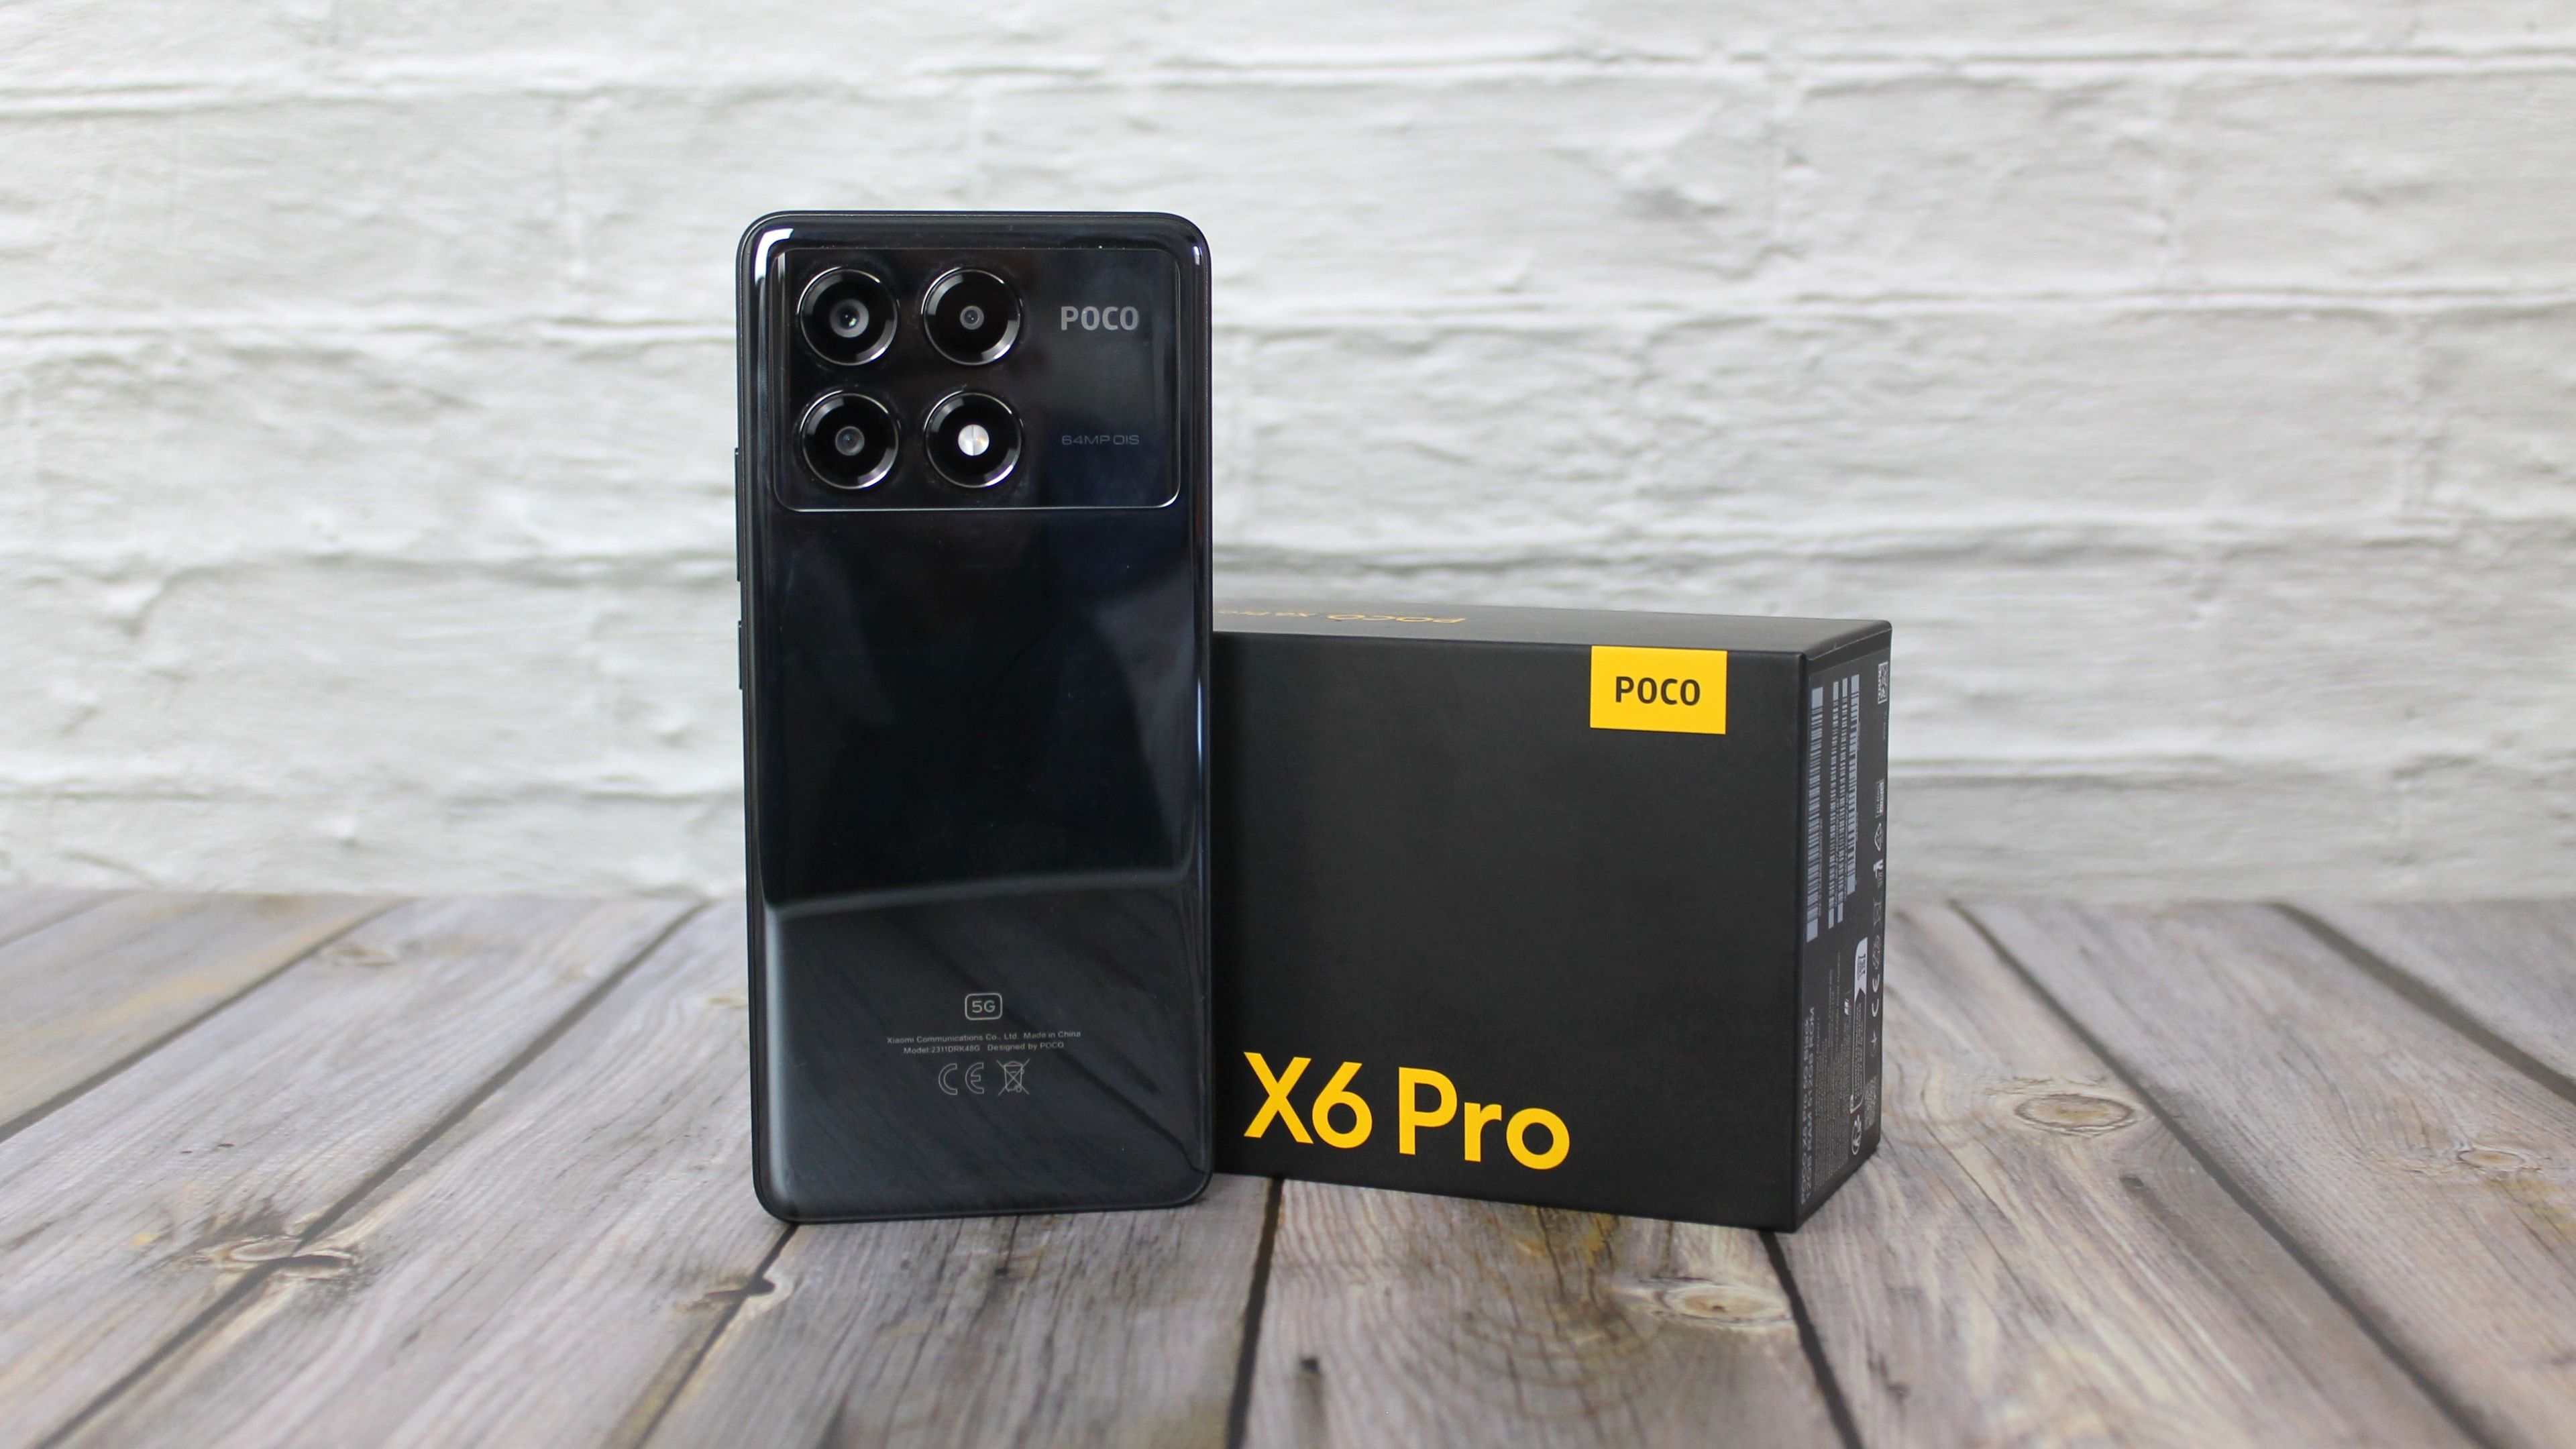 He probado el POCO X6 Pro: uno de los mejores móviles de gama media